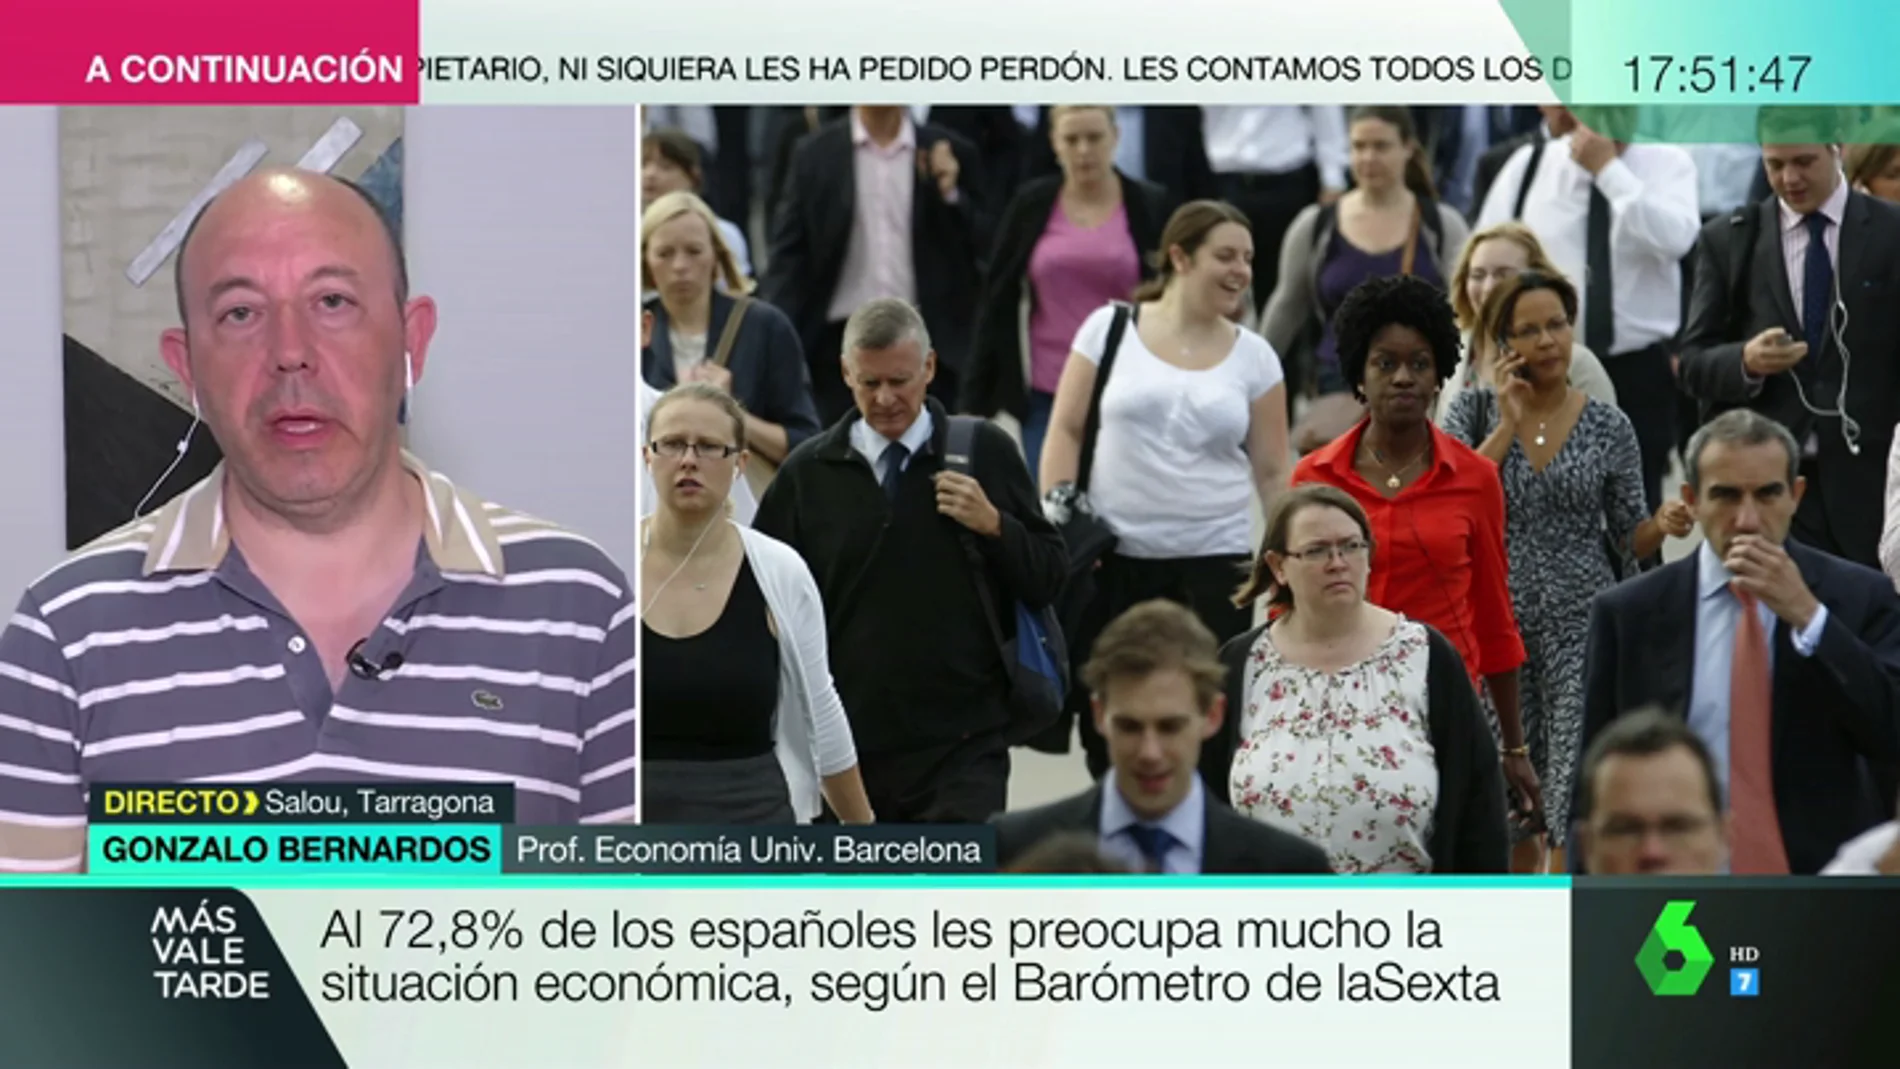 Gonzalo Bernardos alerta sobre la situación económica en España: "Empieza a ser muy negativo que no haya un Gobierno"